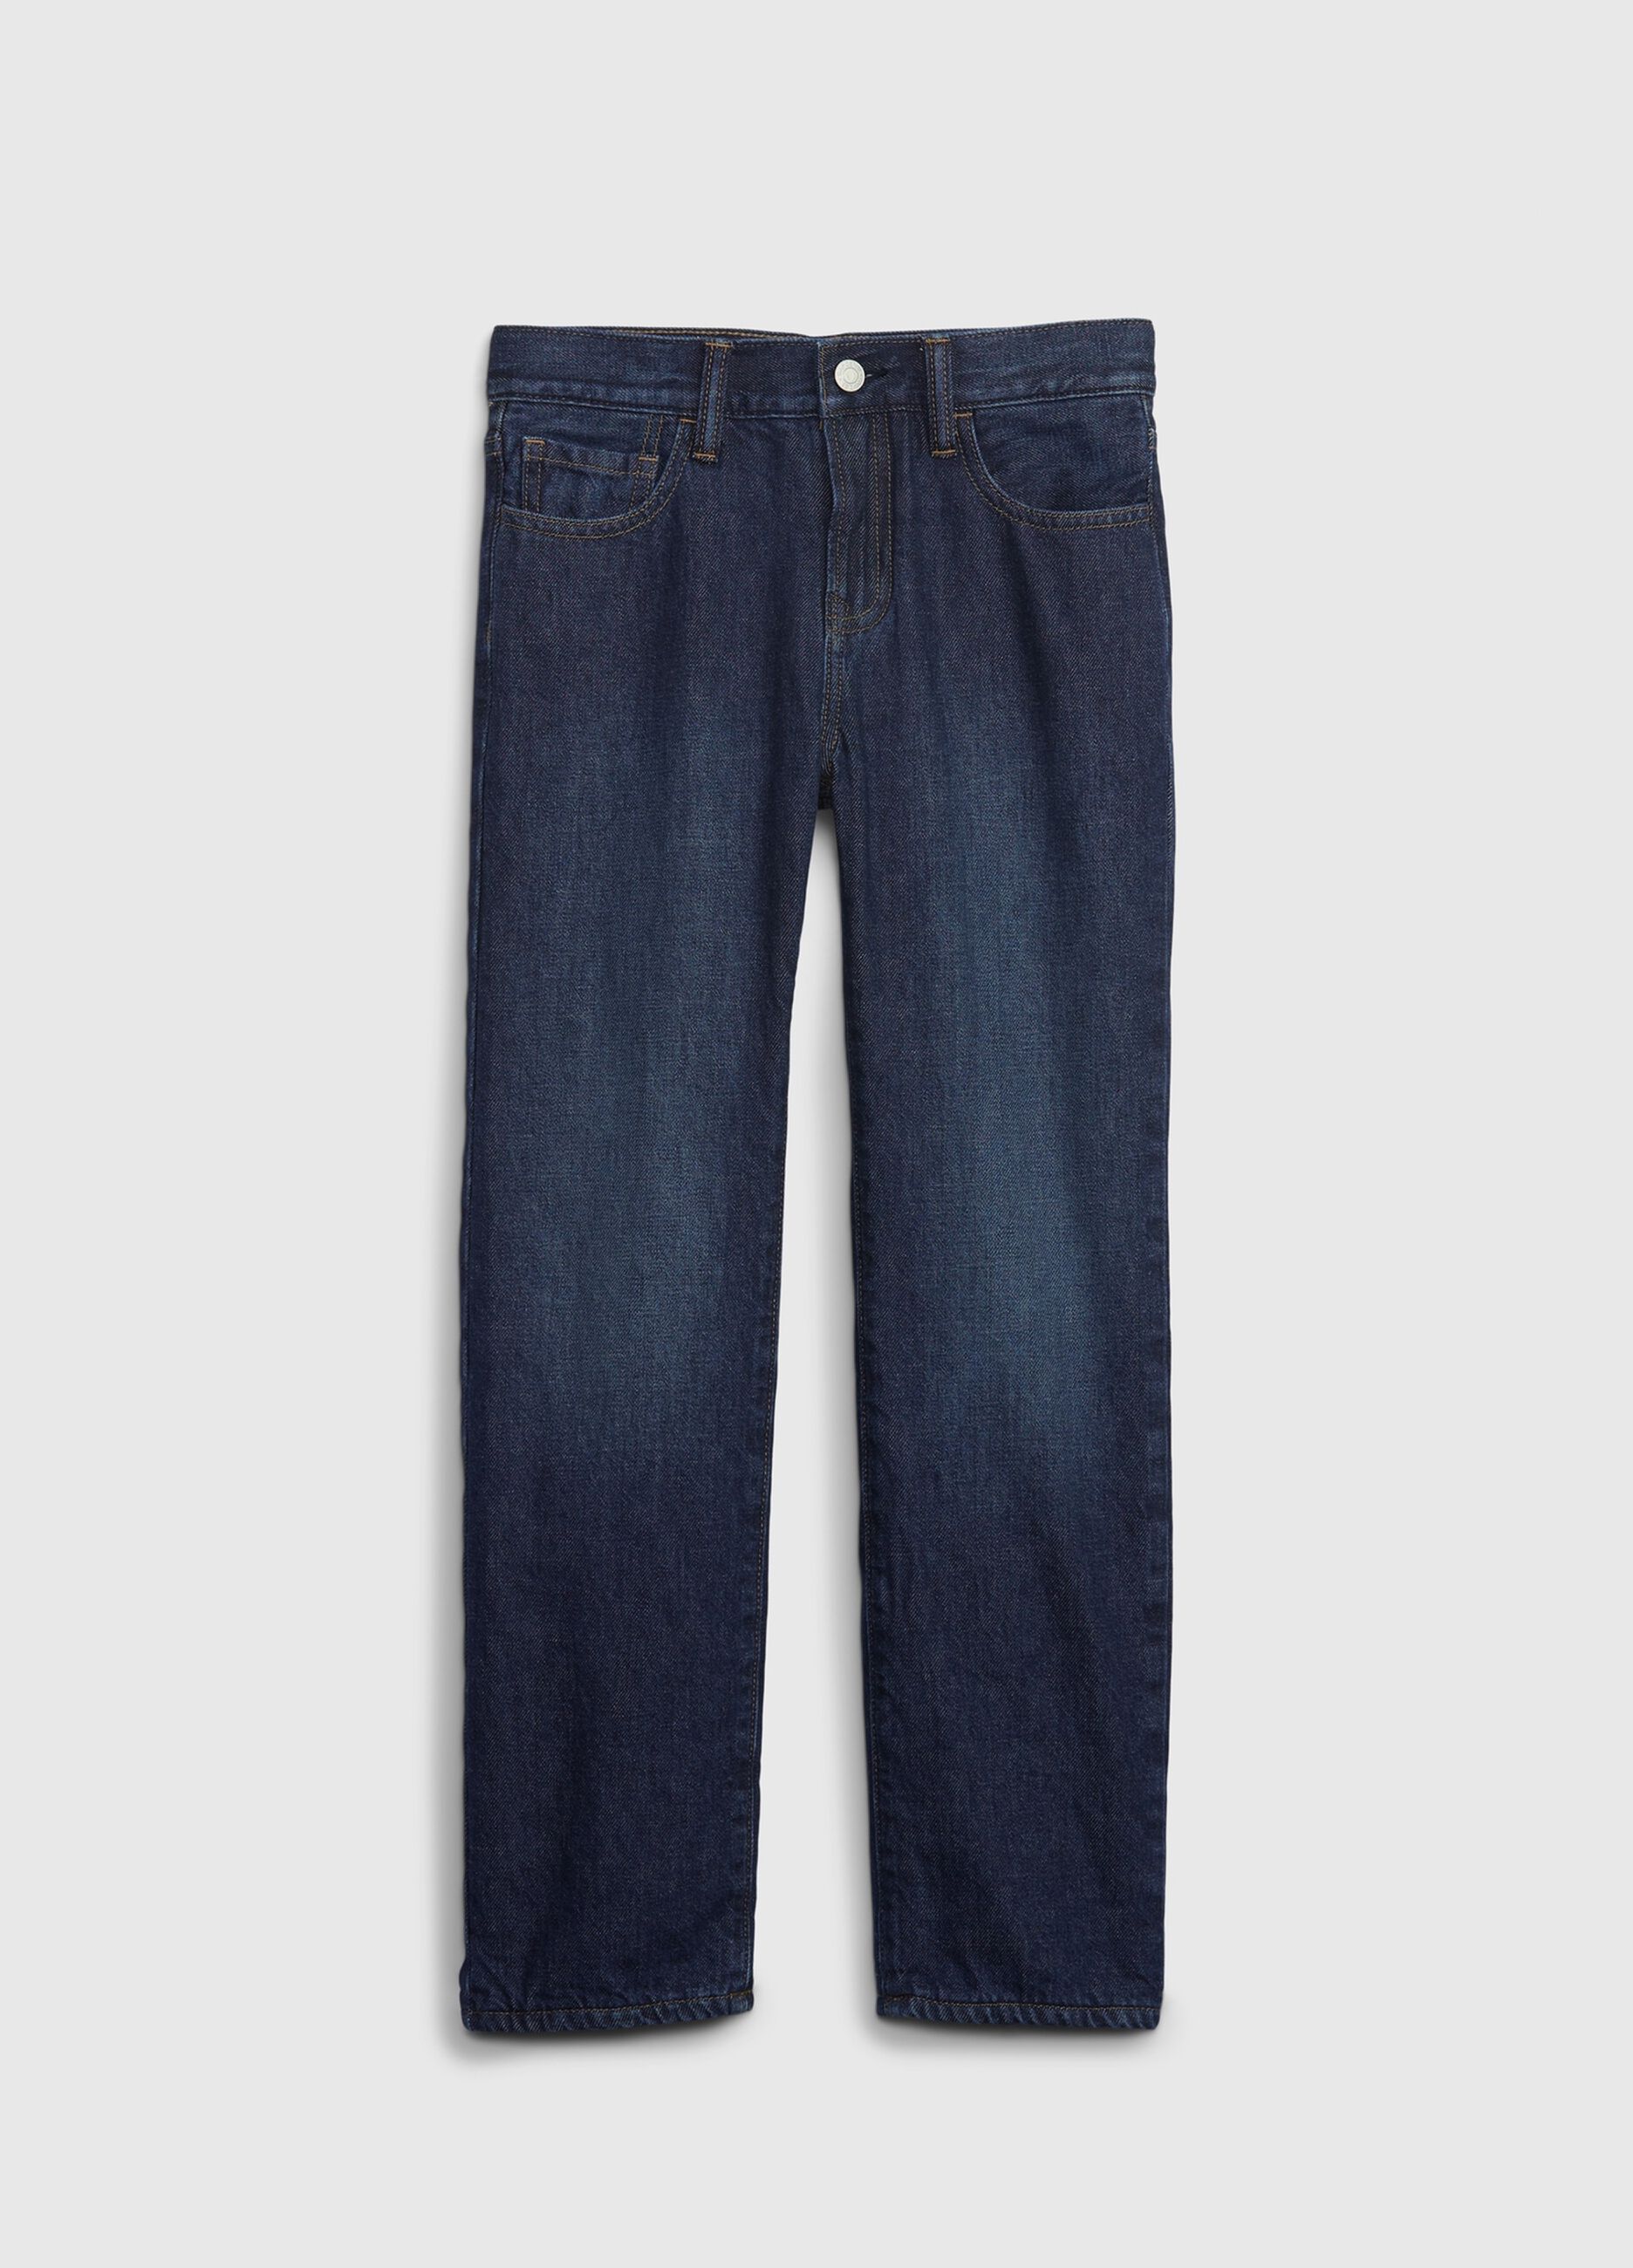 5-pocket, regular fit jeans.